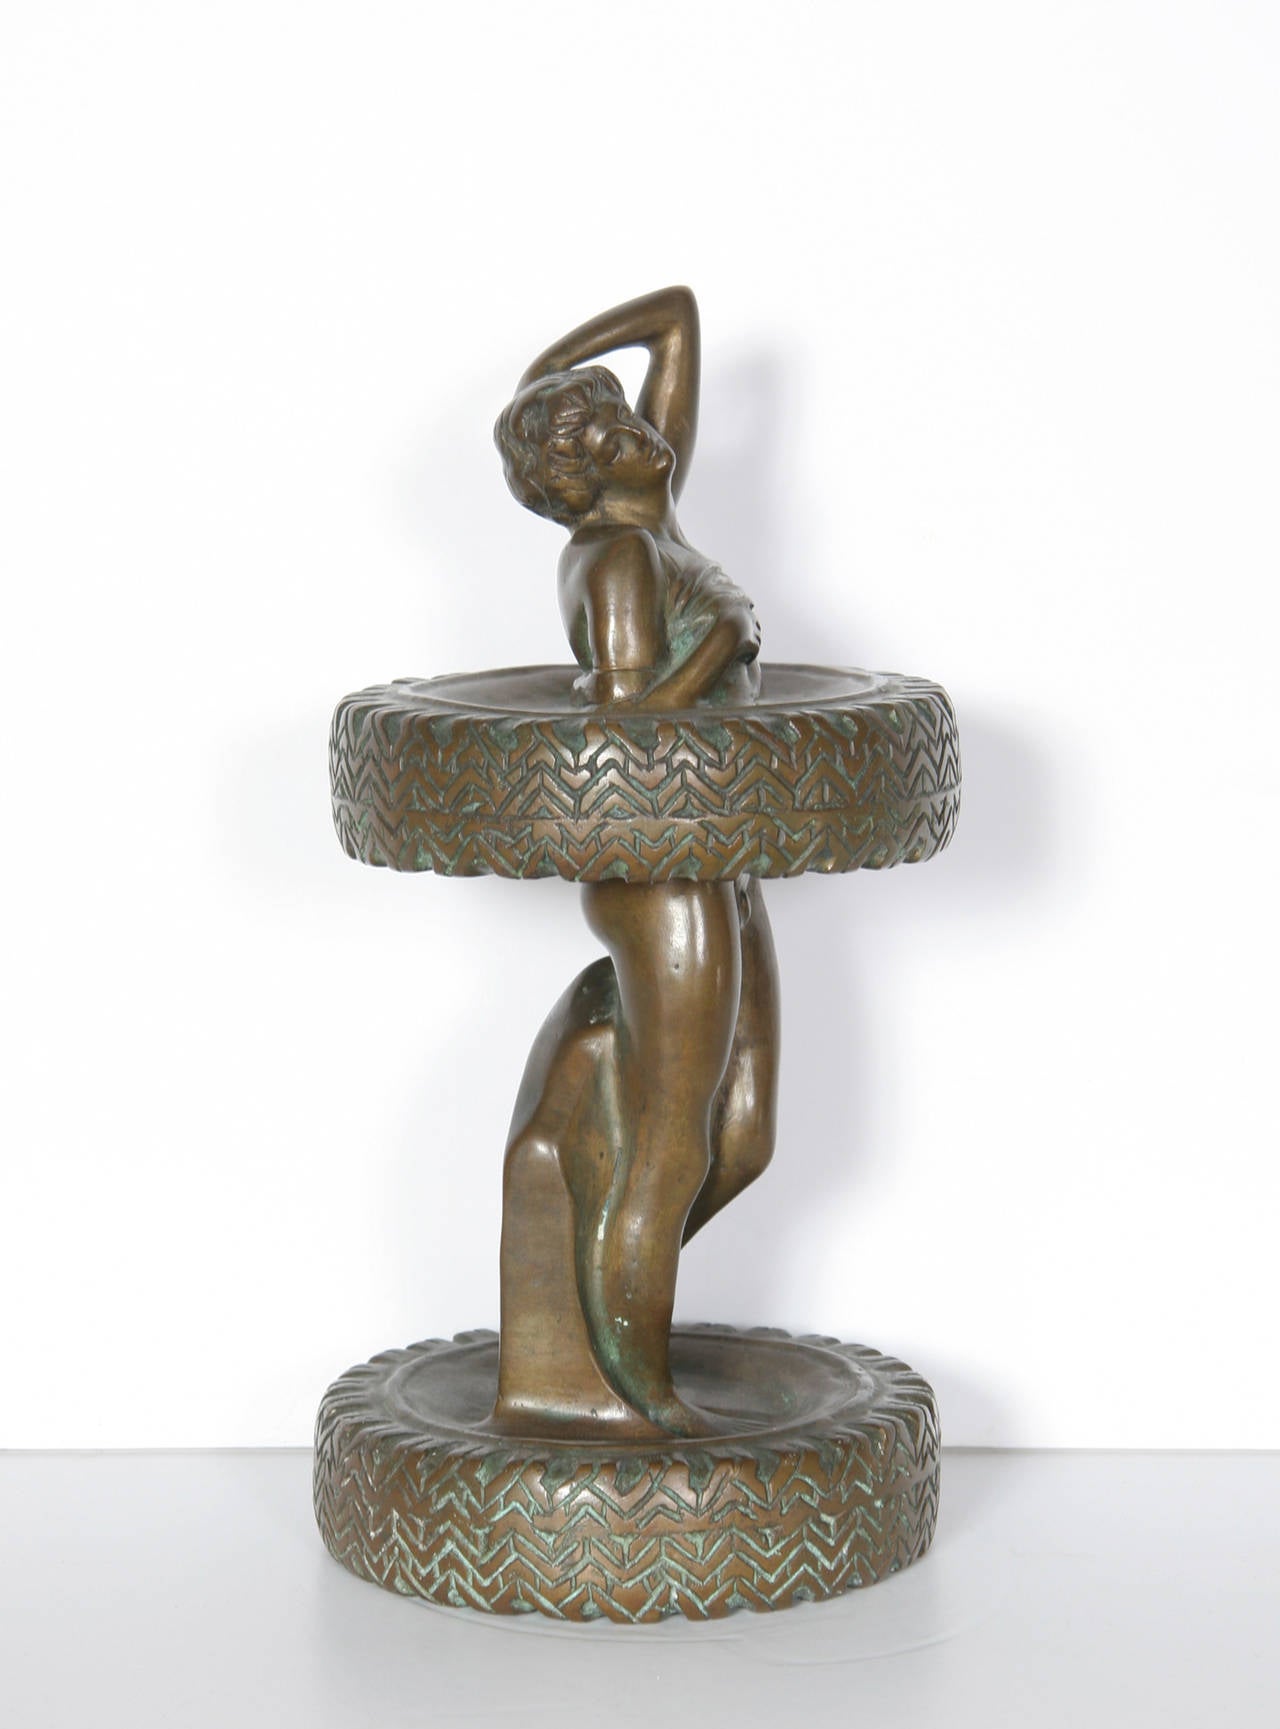 Artiste : Salvador Dali, espagnol (1904 - 1989)
Titre : L'esclave Michelin
Année : 1967
Médium : Sculpture en bronze, Signature et numéro inscrit
Edition : 5/6 
Taille : 12 in x  6 in d. (30,48 cm) 

Référence : Figure 283 dans 